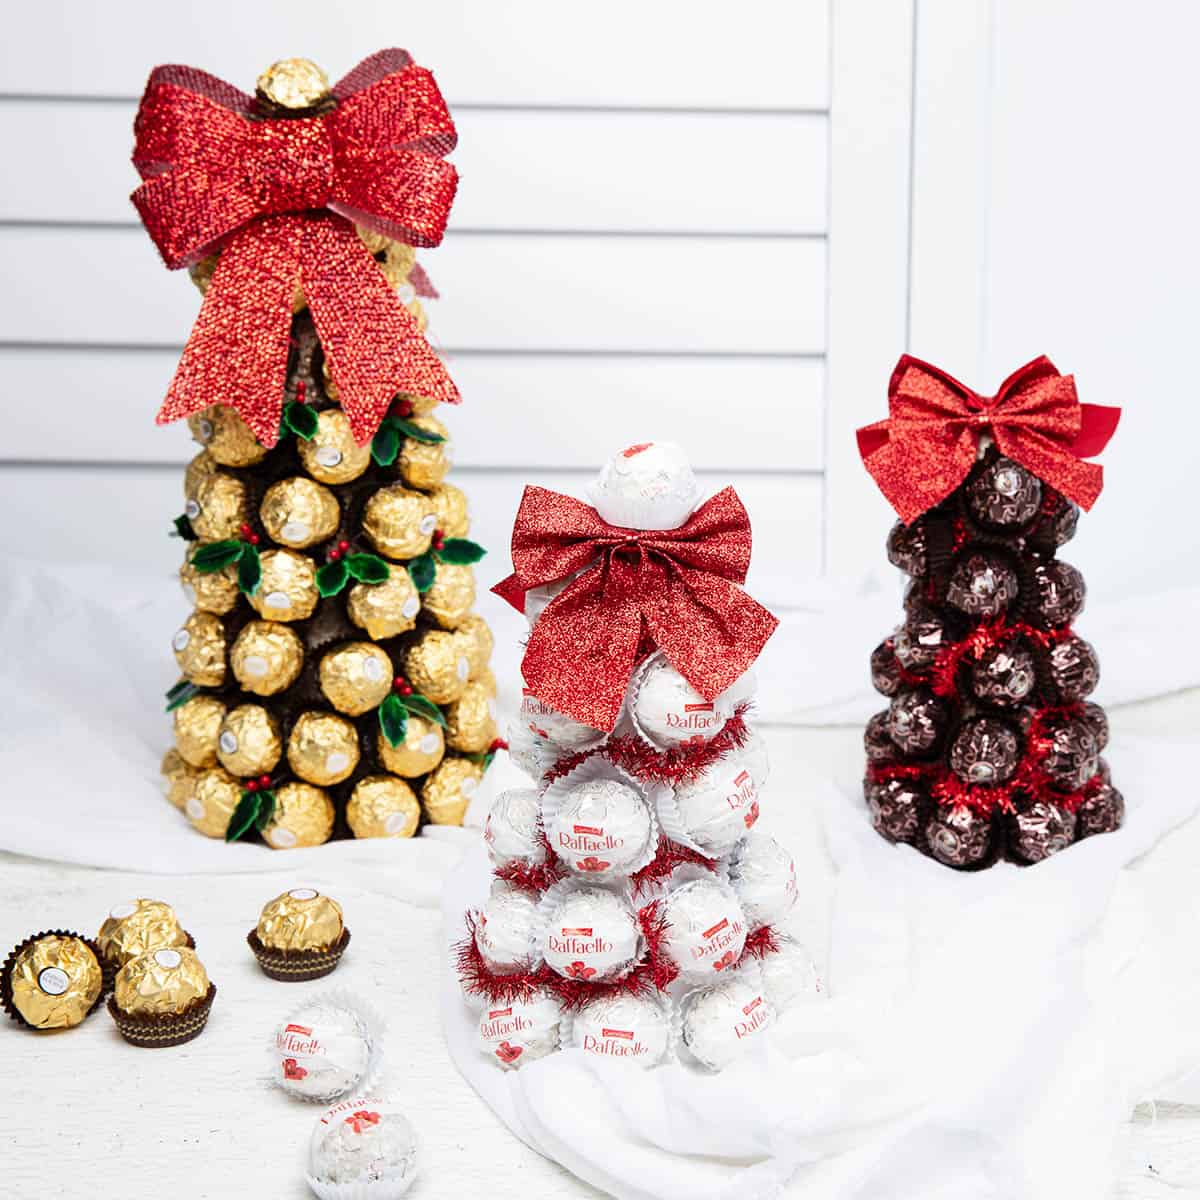 Three Chocolate Christmas Tree Centrepieces